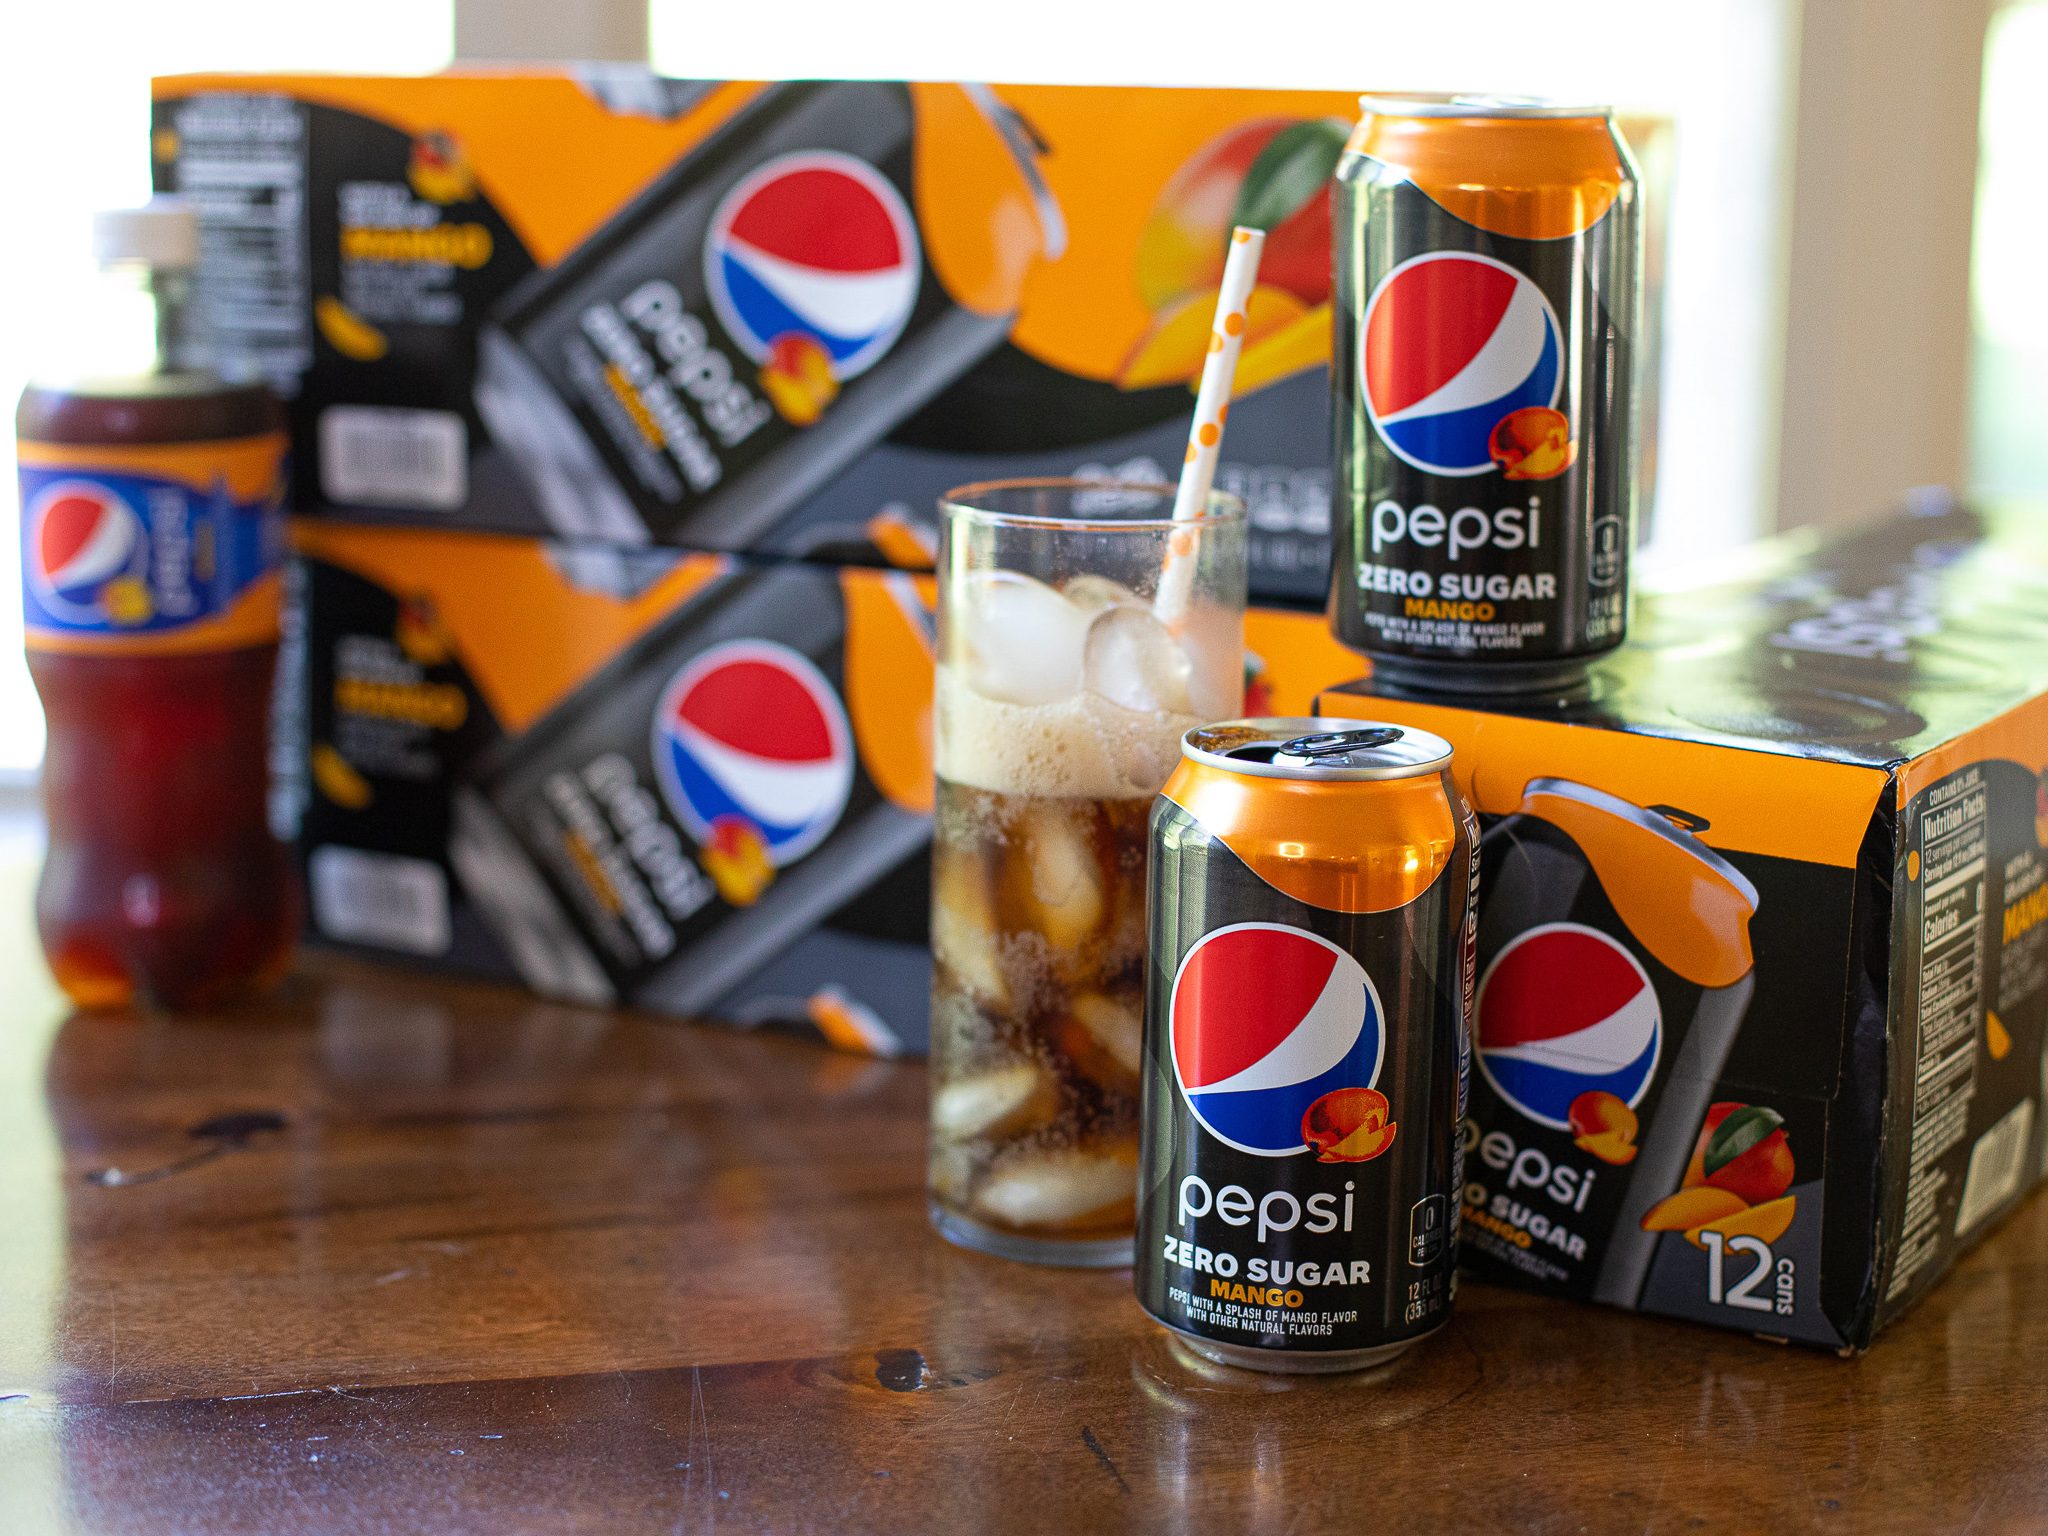 Get Pepsi Zero Sugar 15-Packs For Just $2 At Kroger